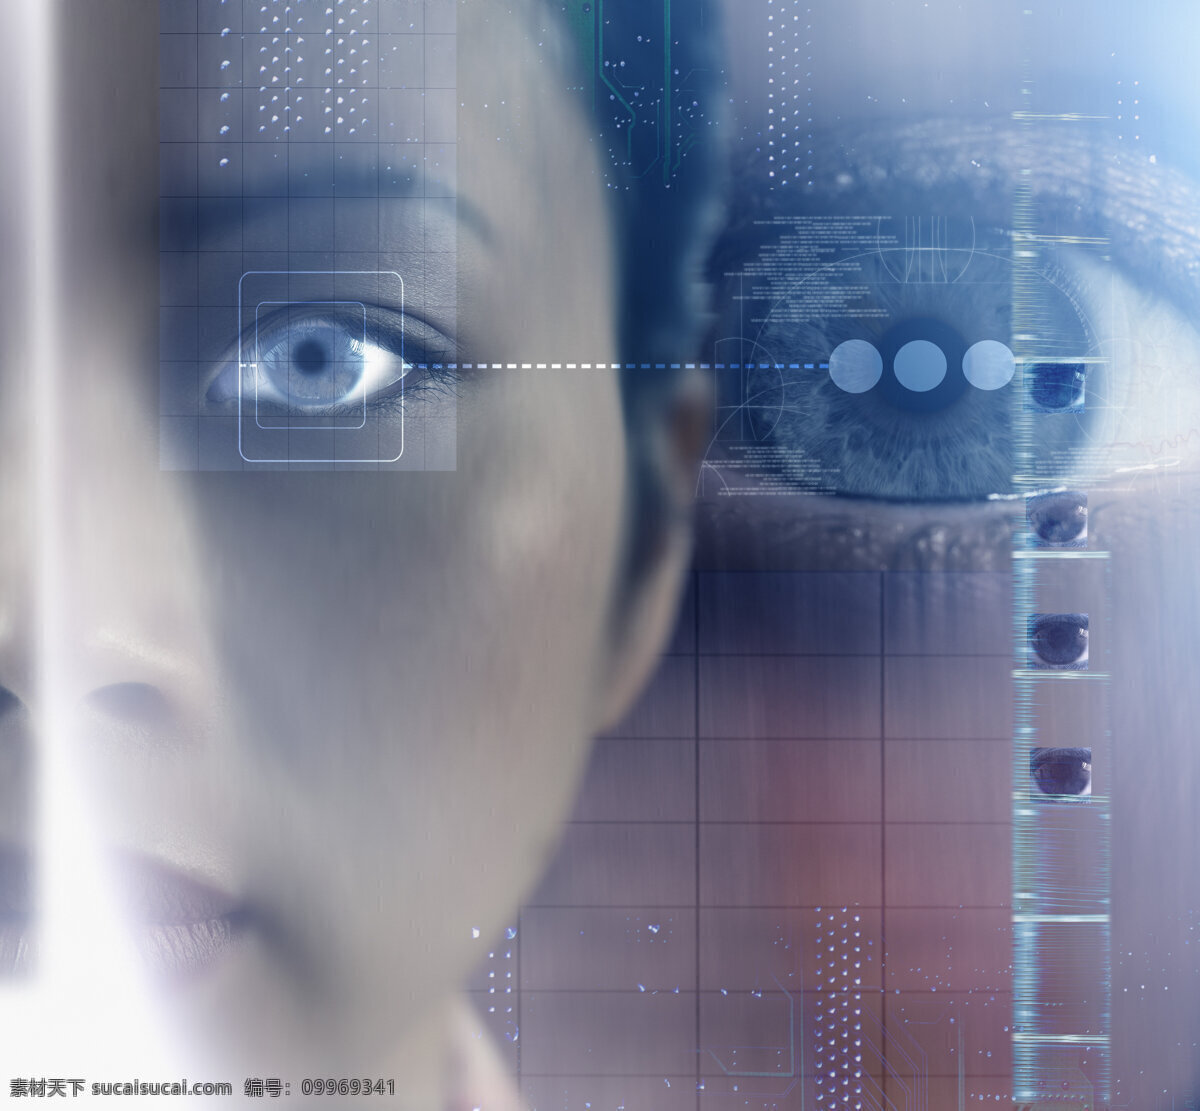 未来 高科技 产品 女性 眼 眼睛 未来科技 高科技产品 观察 瞳孔 蓝眼睛 科技海报 抽象 创意 高清图片 其他类别 现代科技